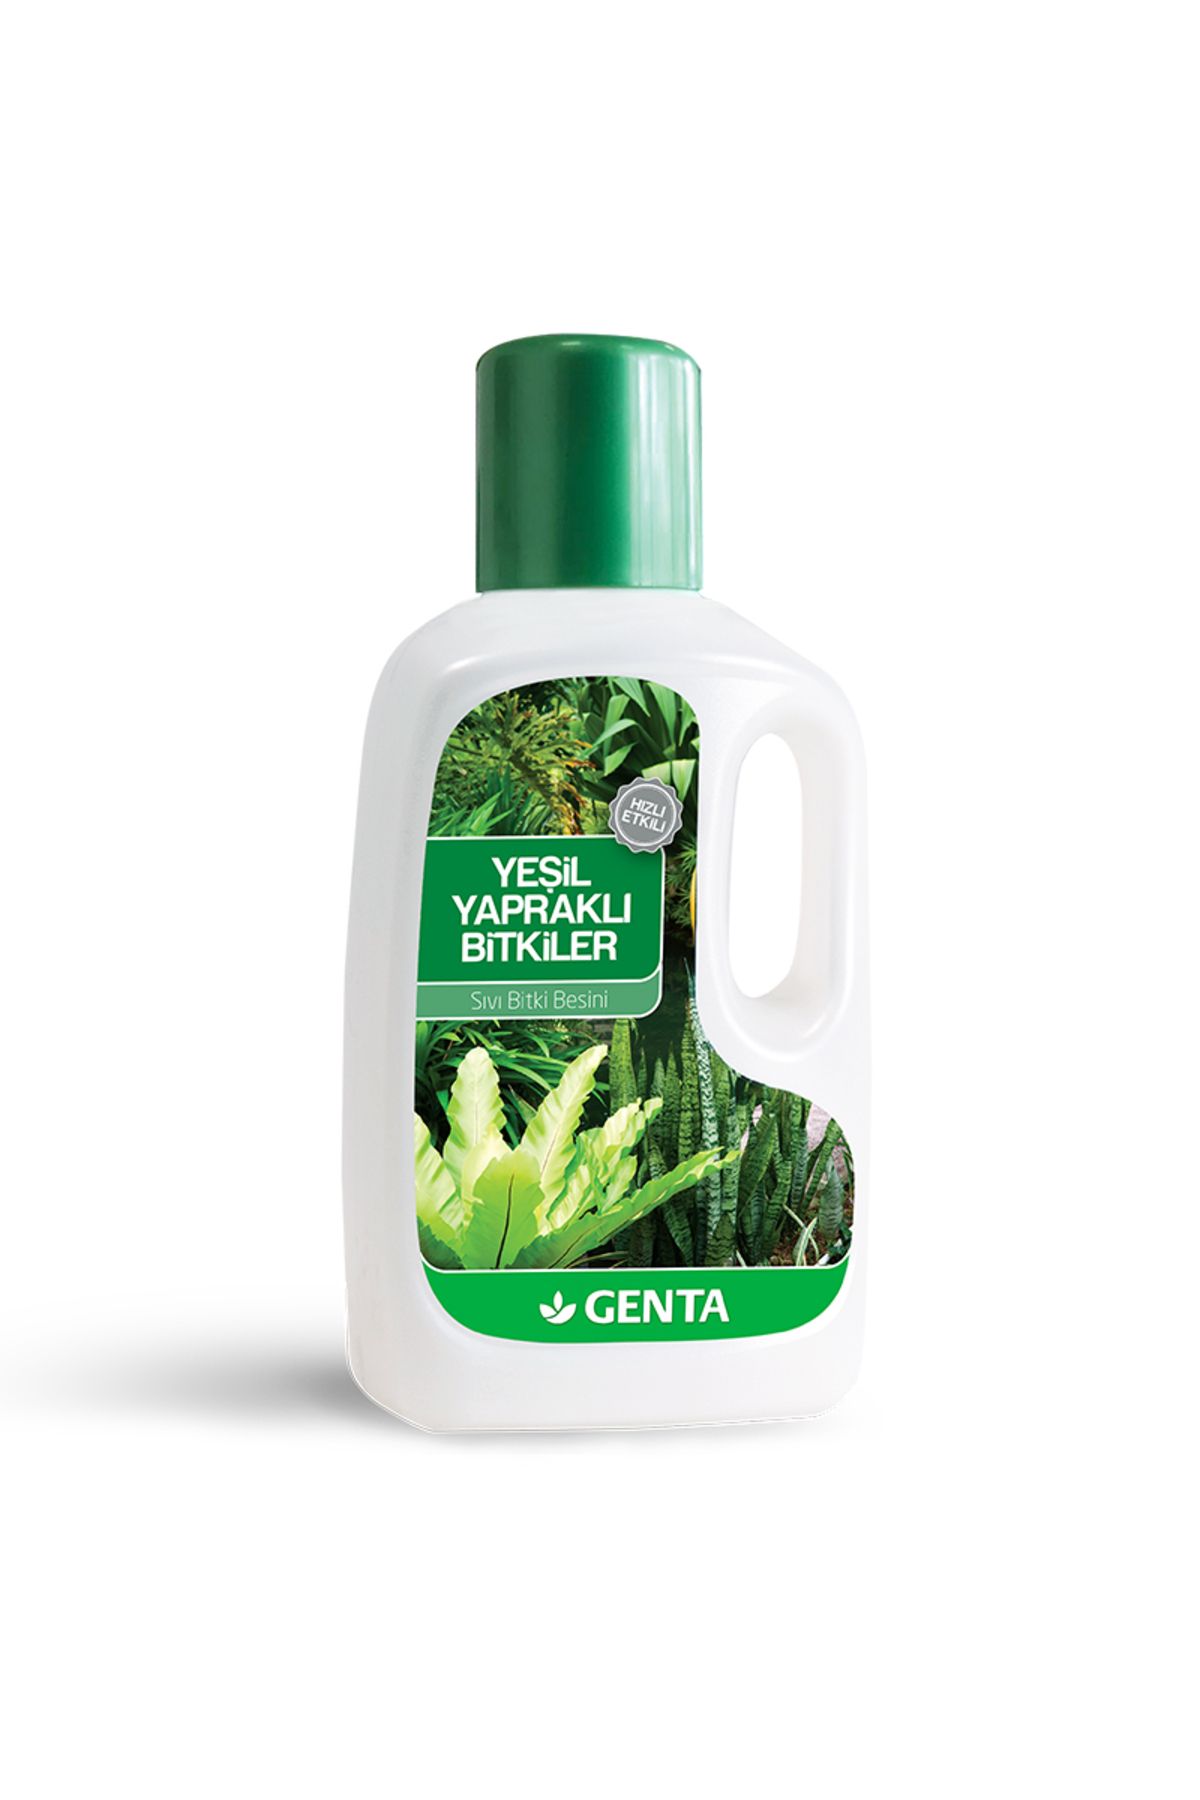 Genta Yeşil Yapraklı Bitkiler Için Sıvı Bitki Besini 500 ml